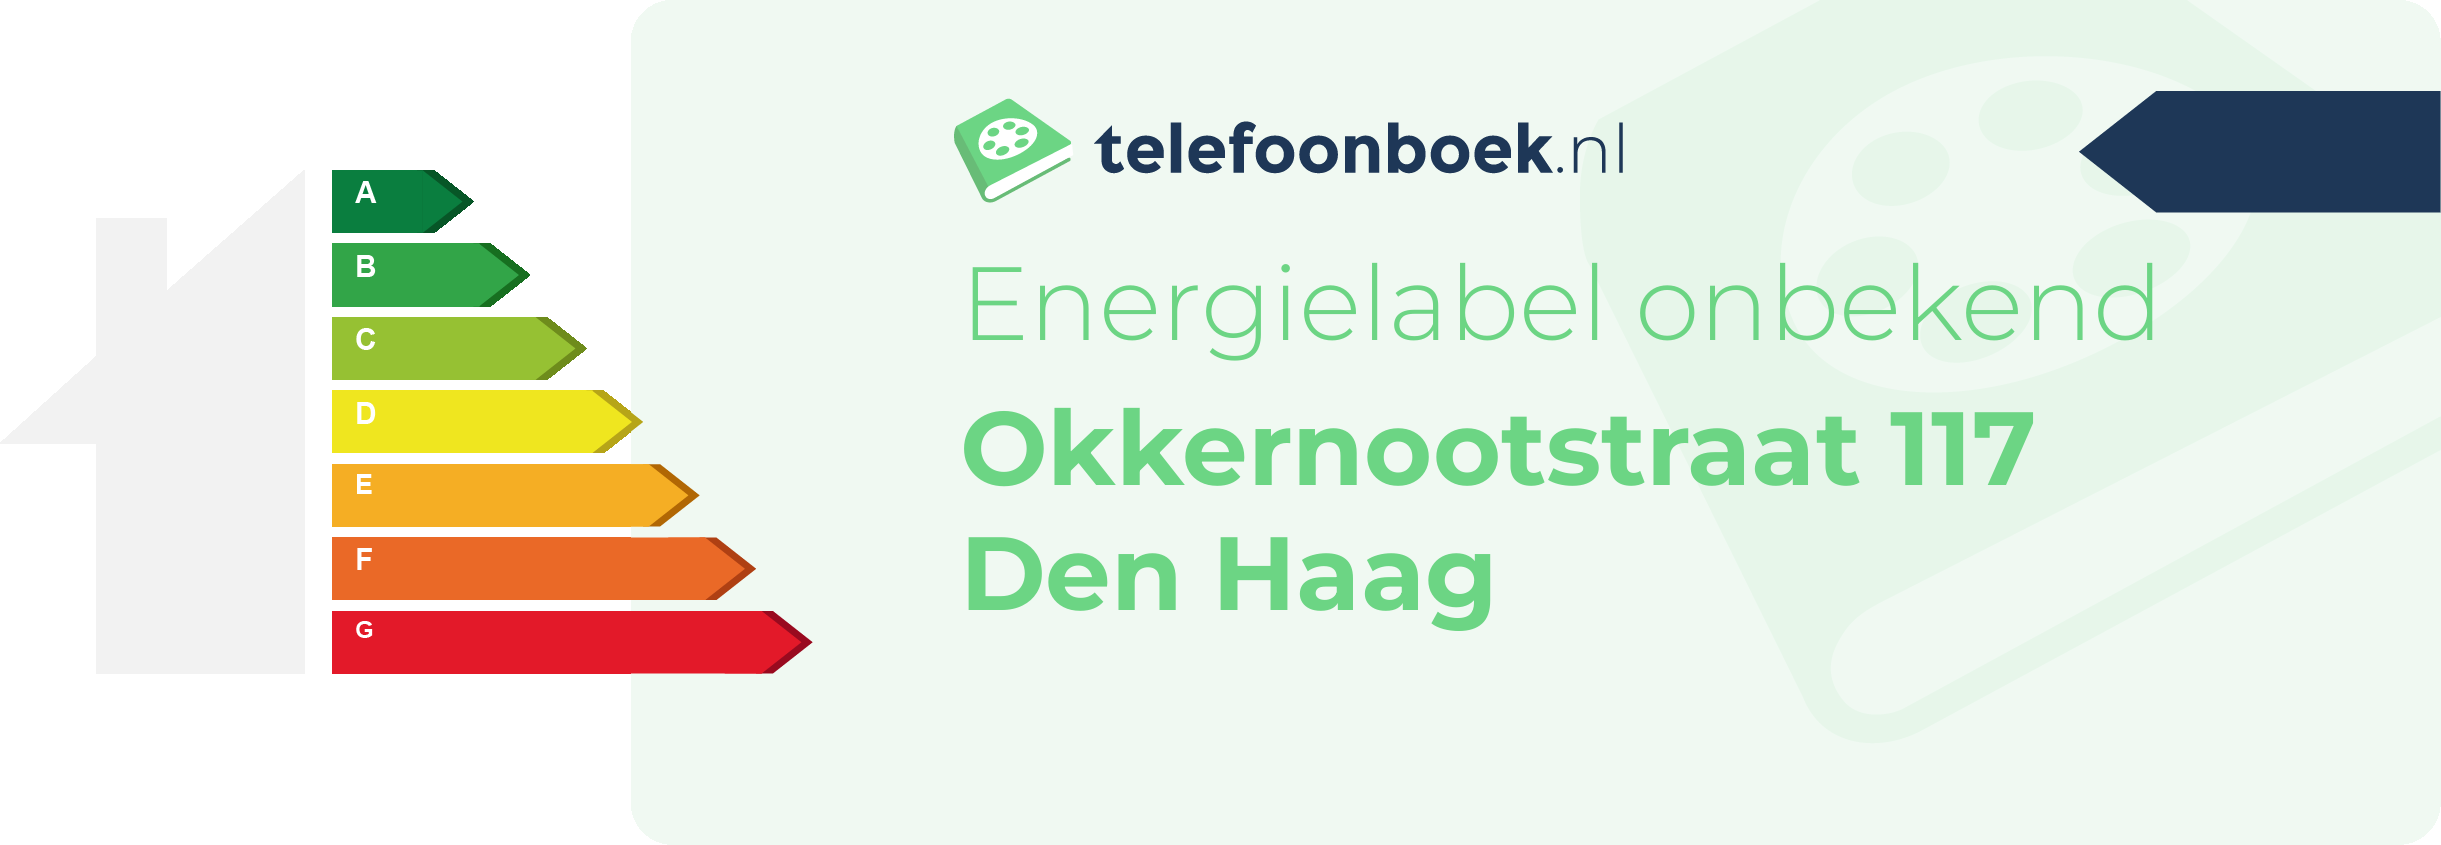 Energielabel Okkernootstraat 117 Den Haag